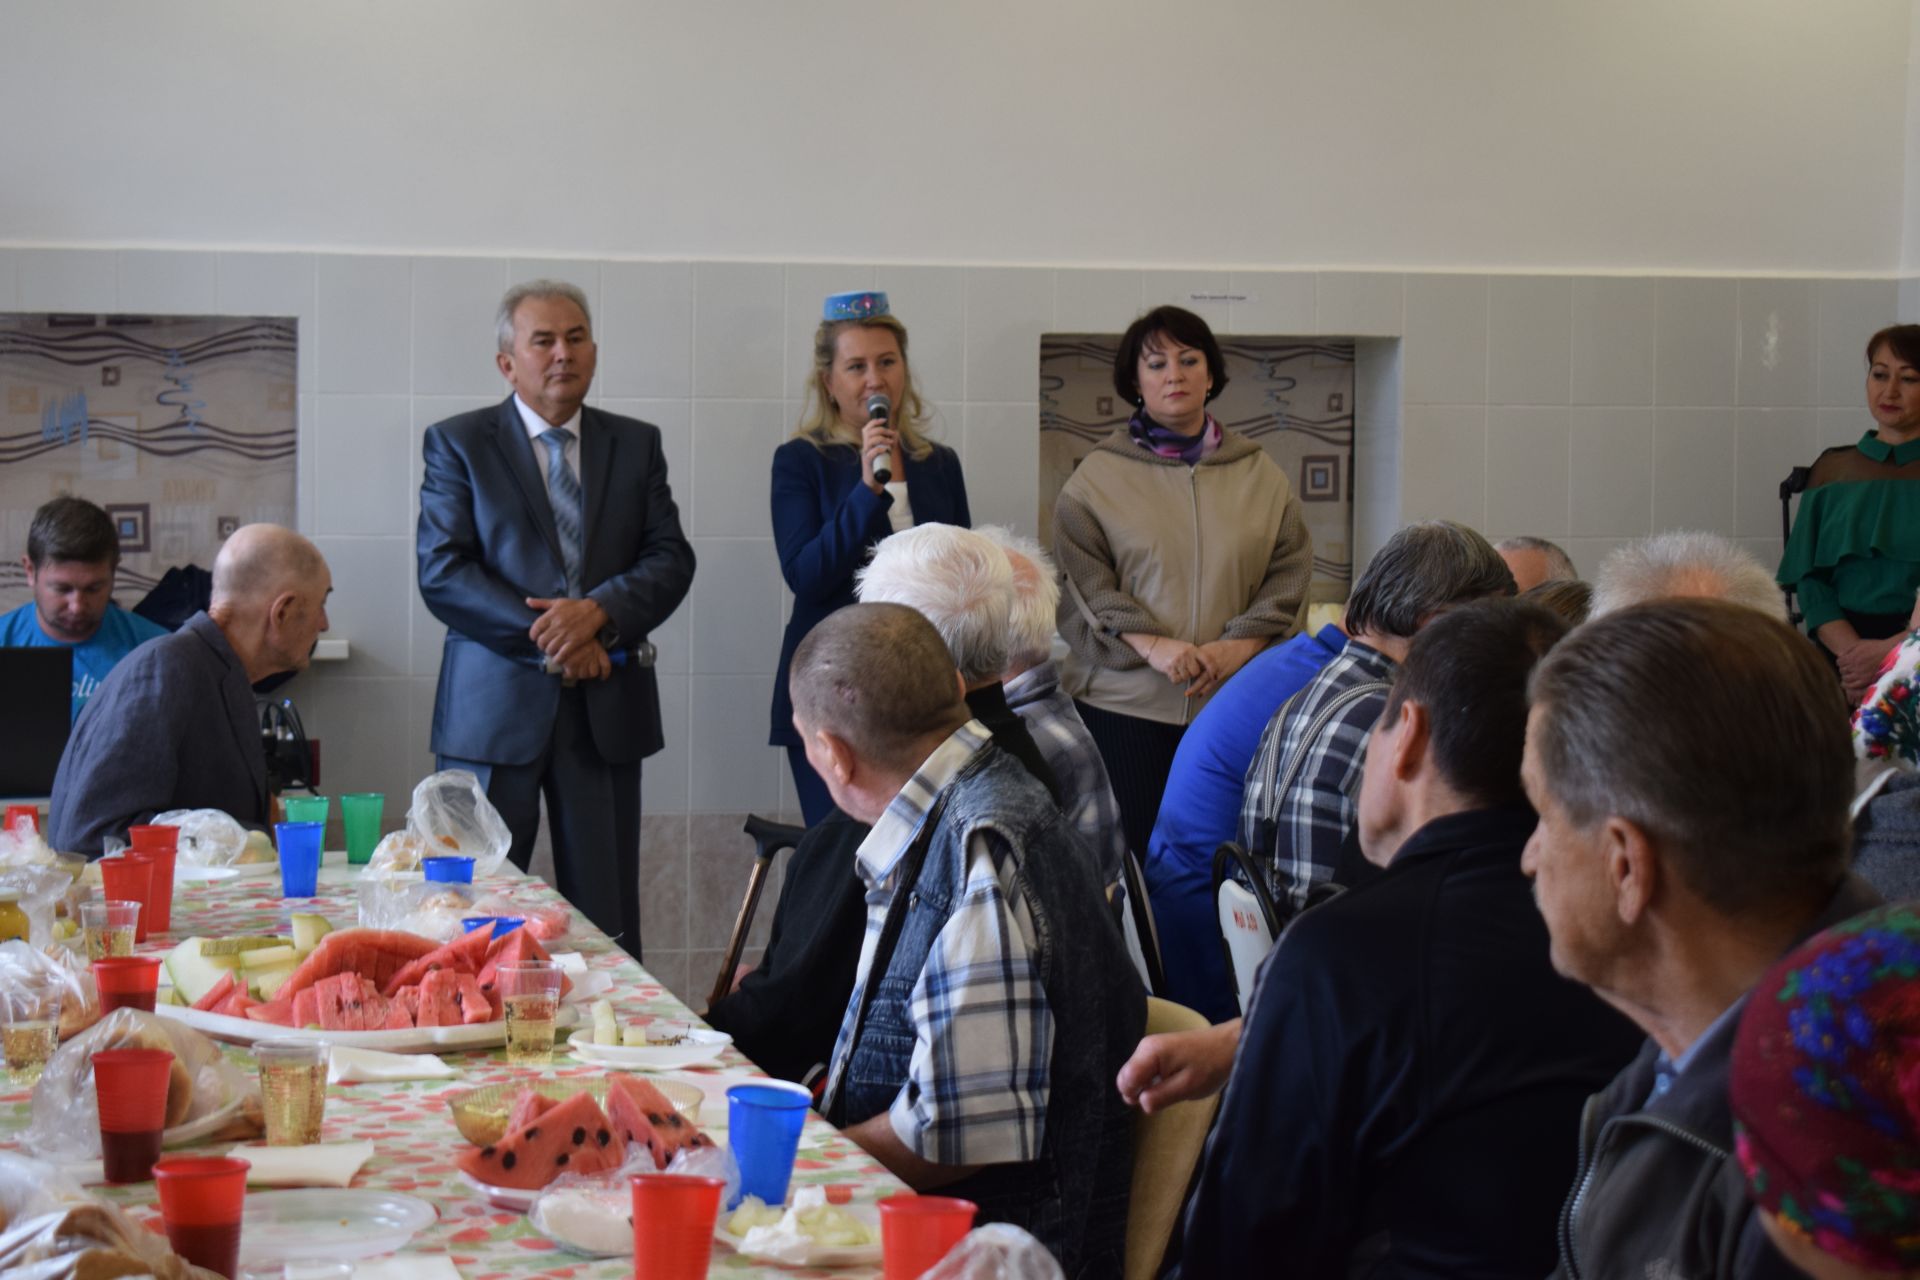 Ветераны и волонтеры Азнакаево организовали в доме для престарелых и инвалидов праздник - ФОТО